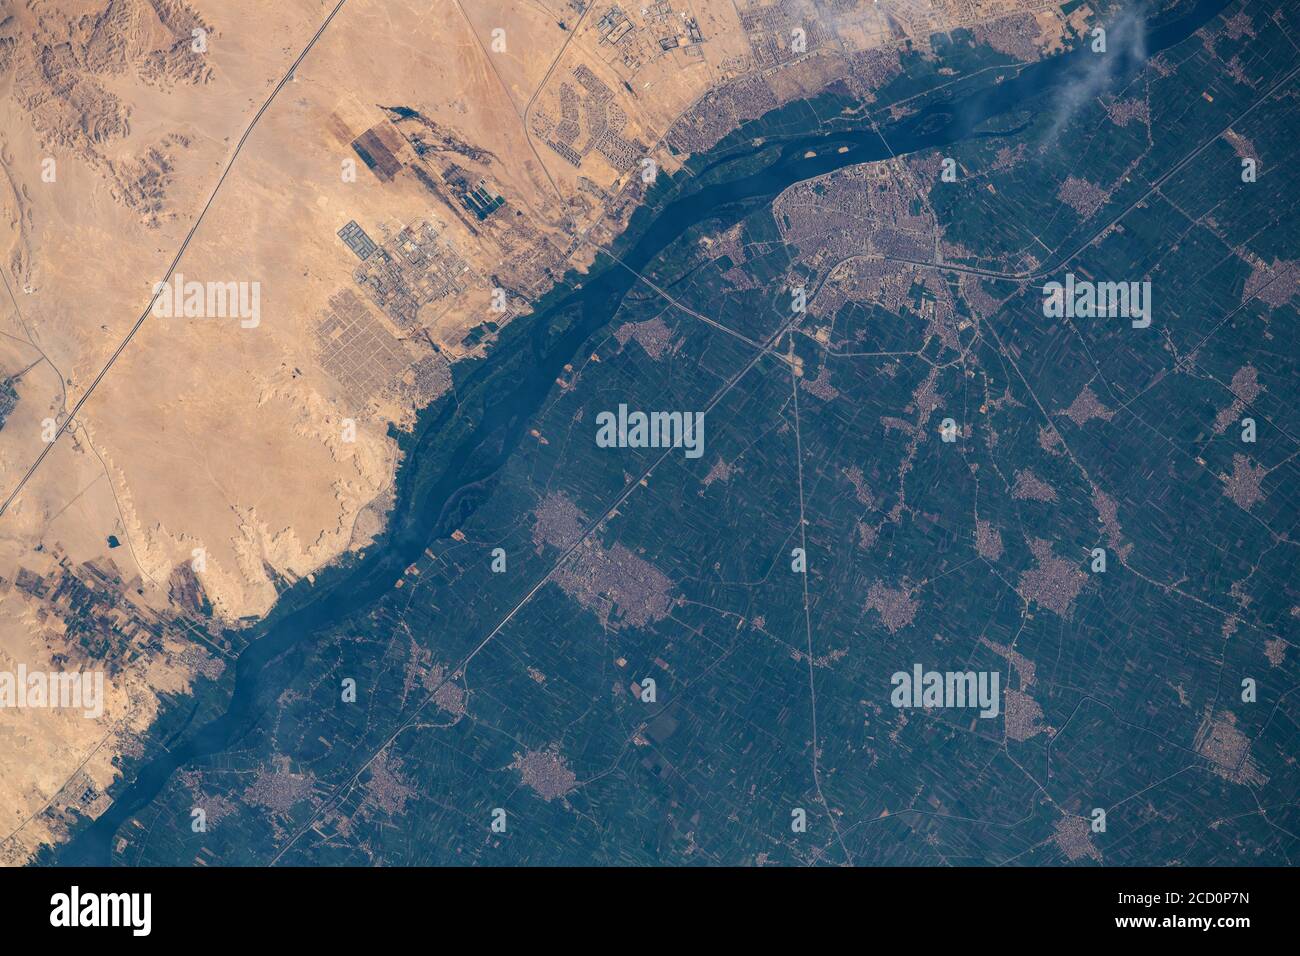 ÉGYPTE - 11 août 2020 - la Station spatiale internationale Était en orbite au-dessus de l'Égypte, juste à l'est du Nil lorsque cette photo a été prise de l'ec Banque D'Images